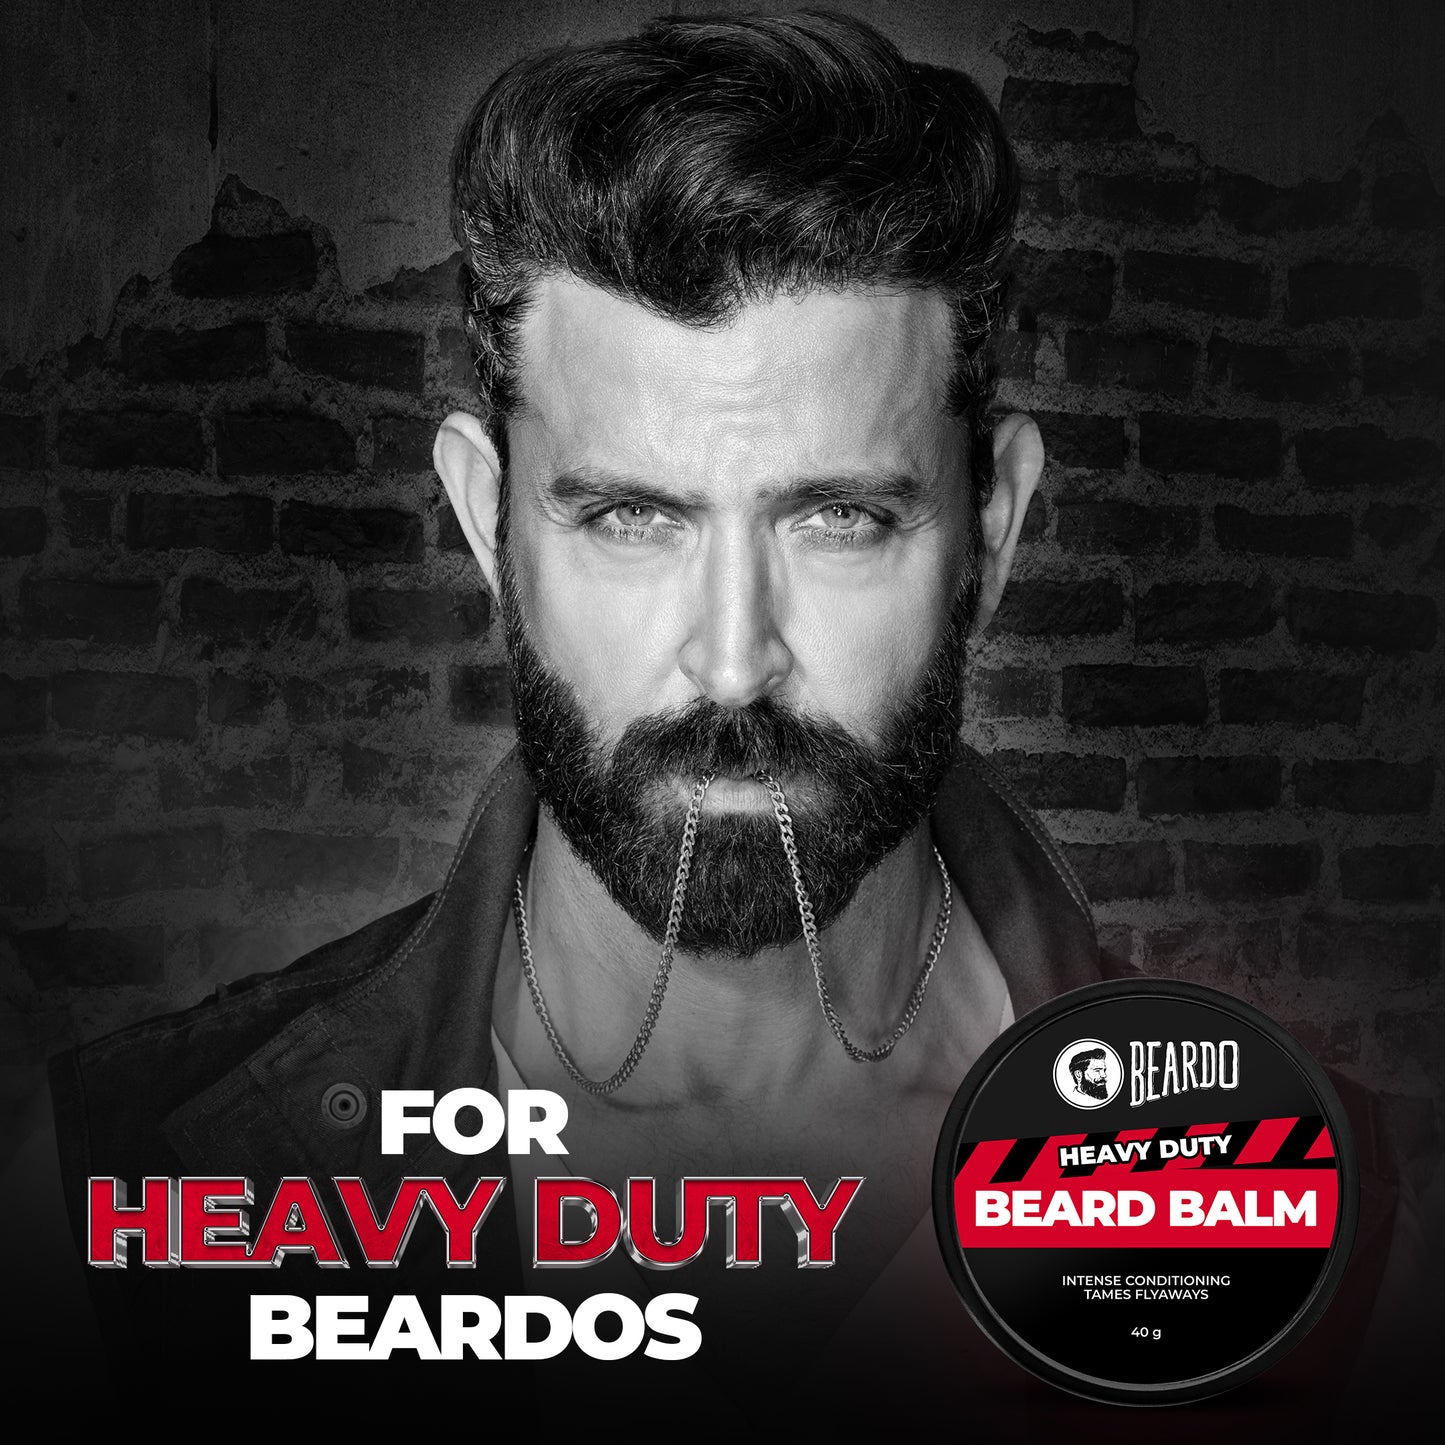 heavy duty beard balm, best beard balm, beard styling balm, best smelling beard balm